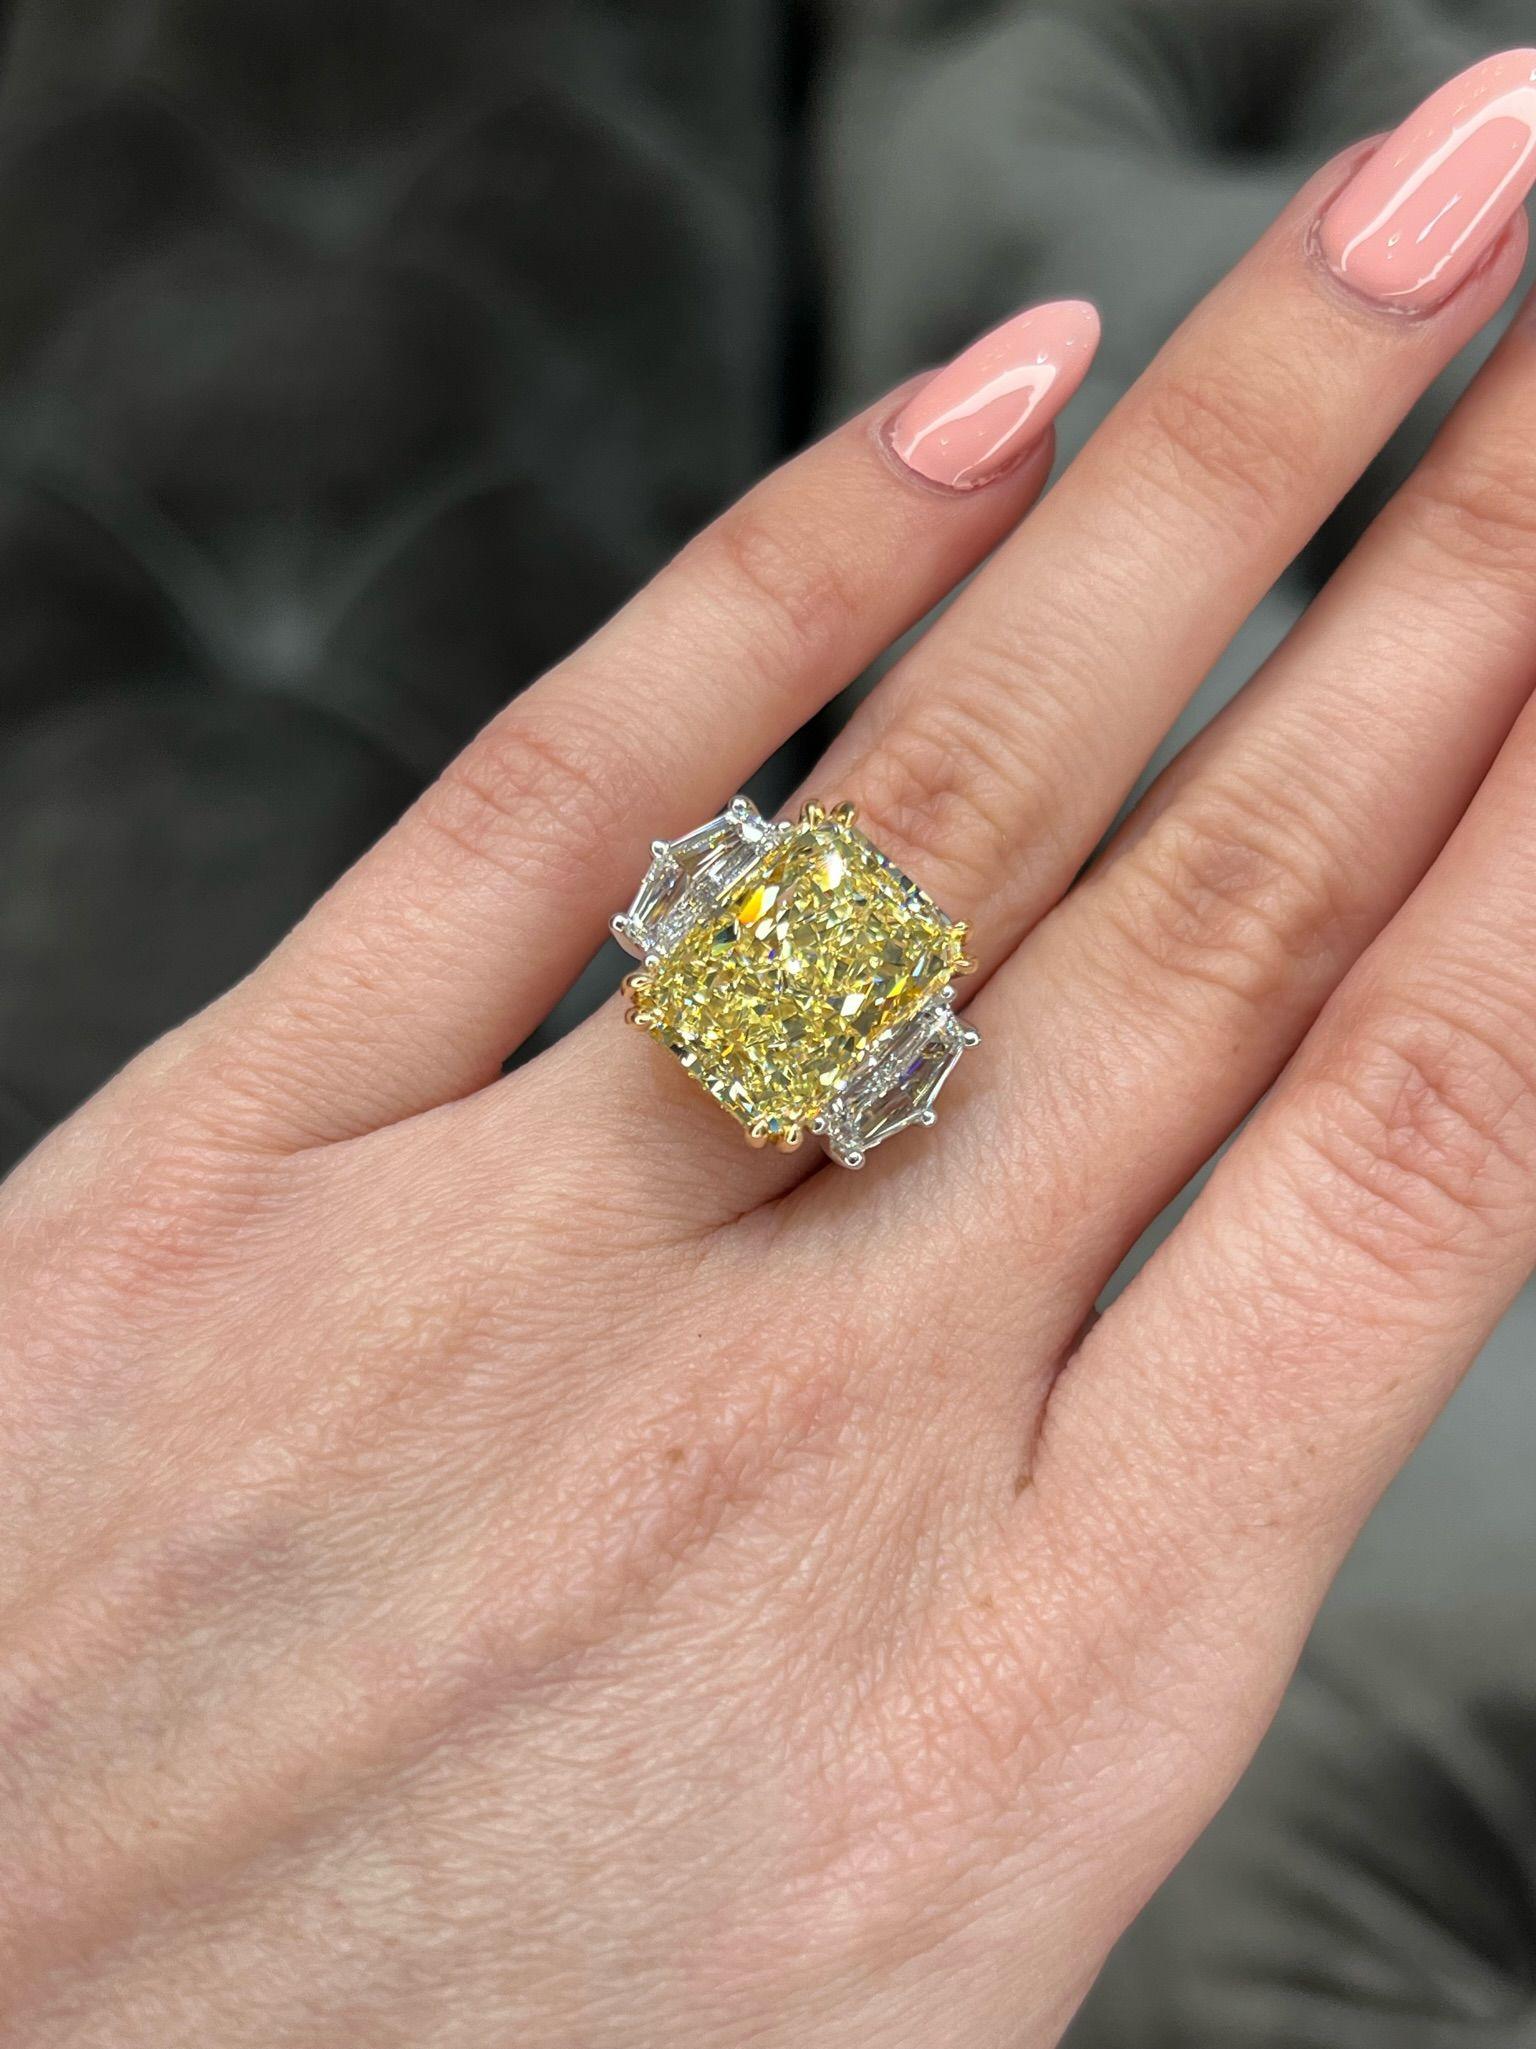 David Rosenberg 11.18 Radiant Fancy Yellow VVS2 GIA Diamond Engagement Ring For Sale 4